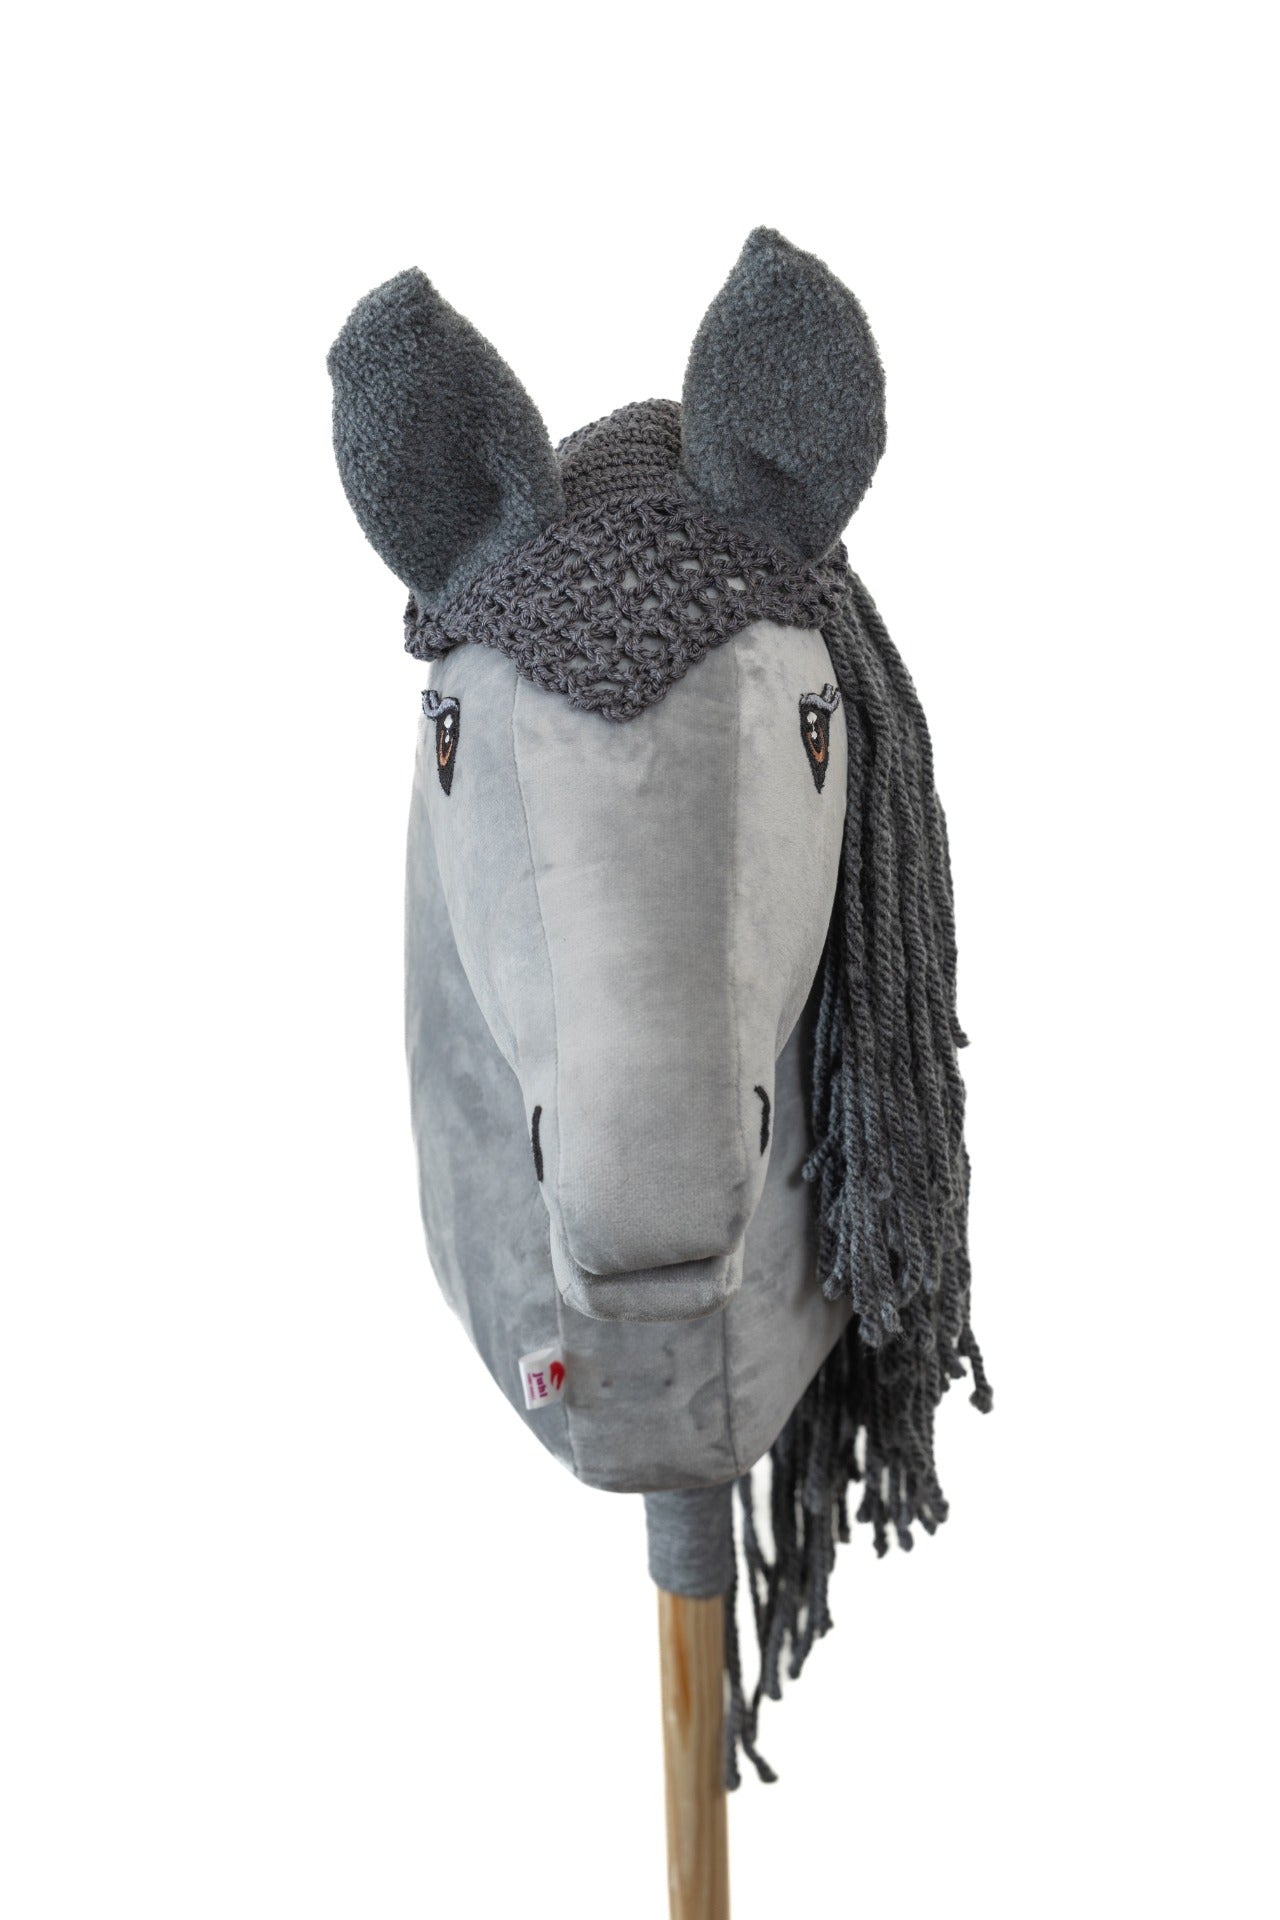 Ear net crocheted - Grey with grey ears - Foal